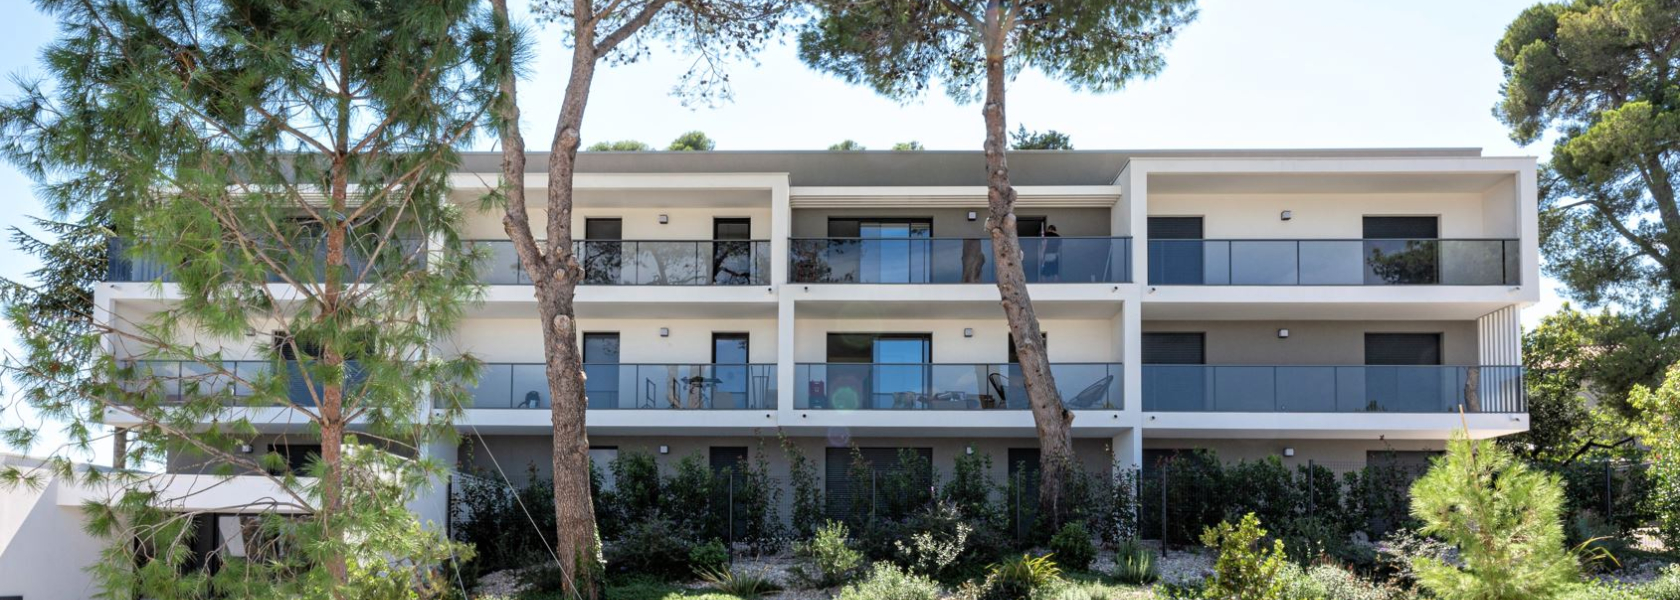 Financement Immobilier, gestion locative partenaire FNAIM, logement neuf Nîmes et Montpellier